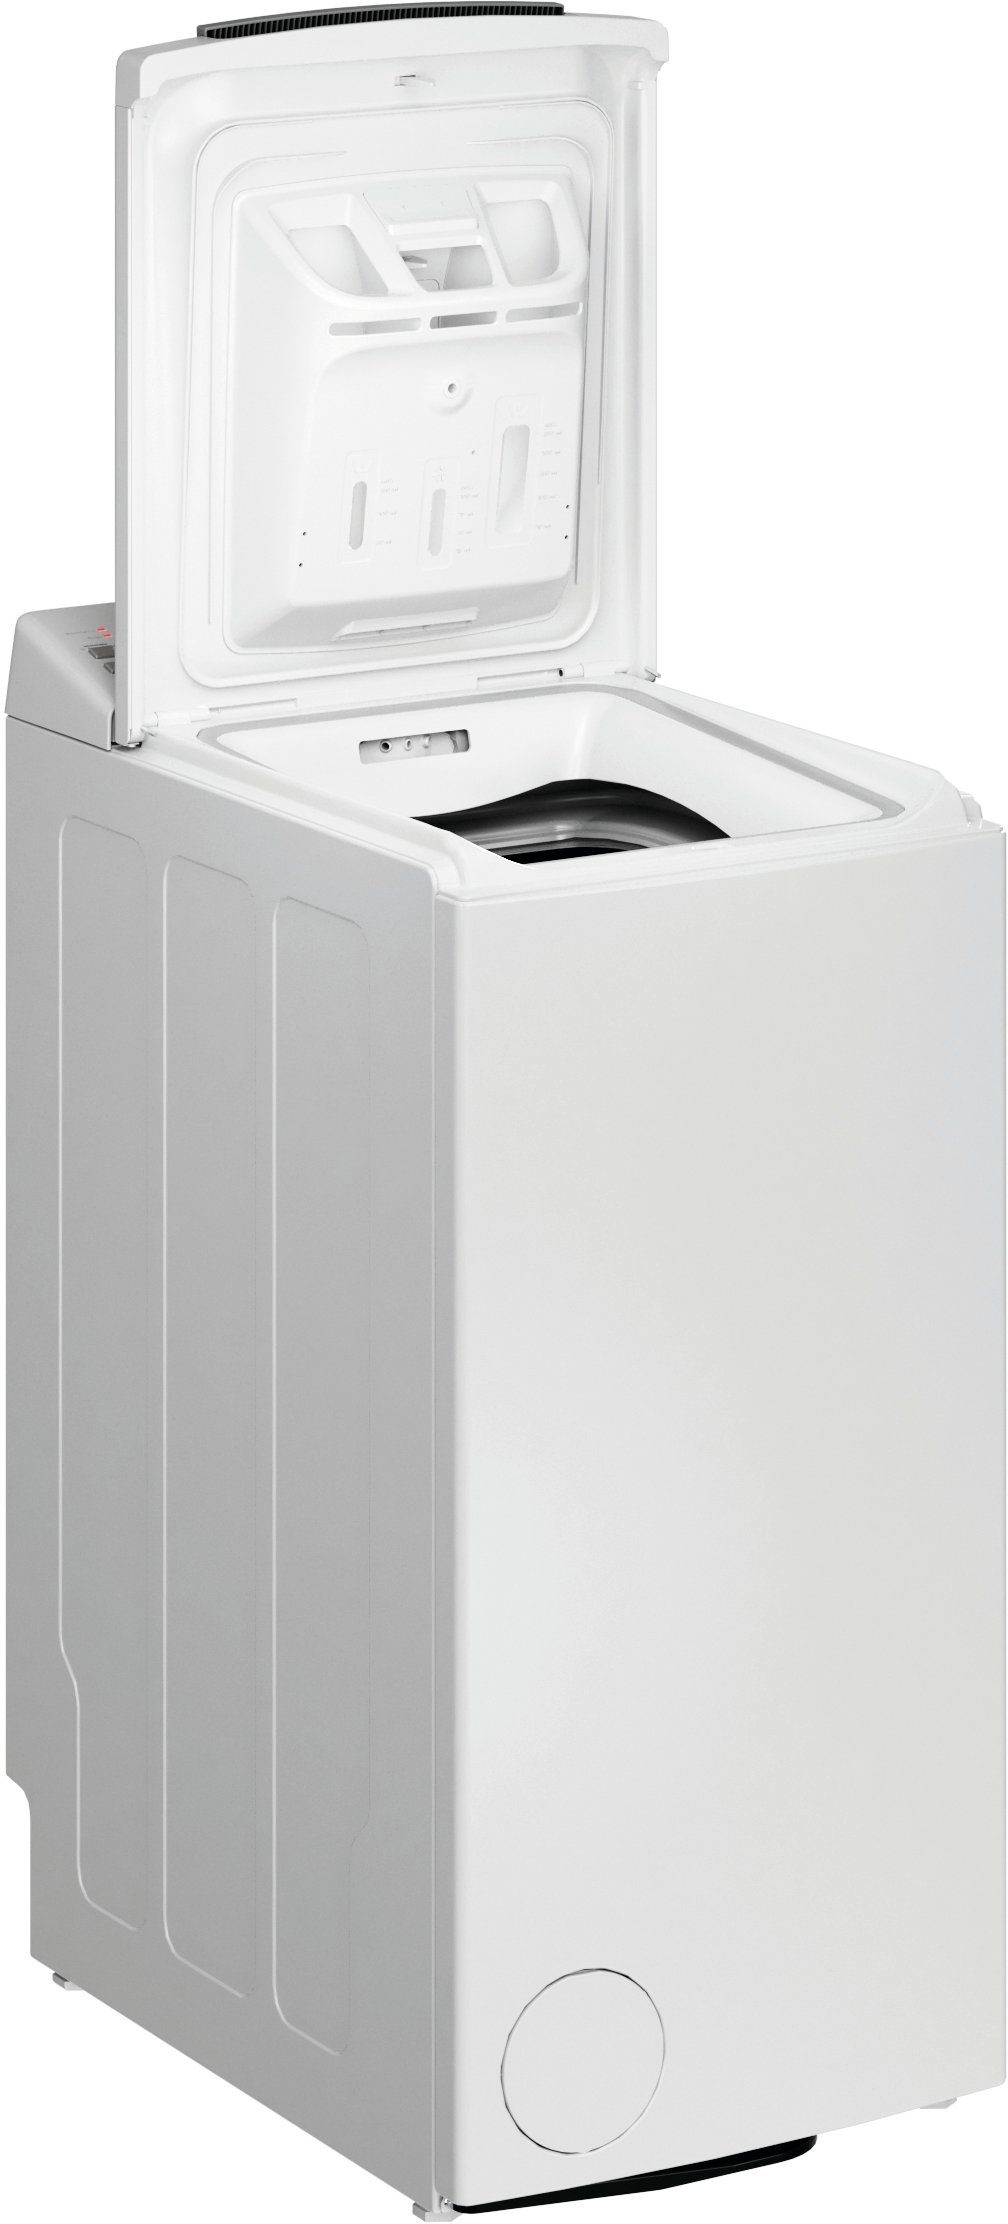 BAUKNECHT Waschmaschine Toplader WAT 6313 C, 6 kg, 1200 U/min